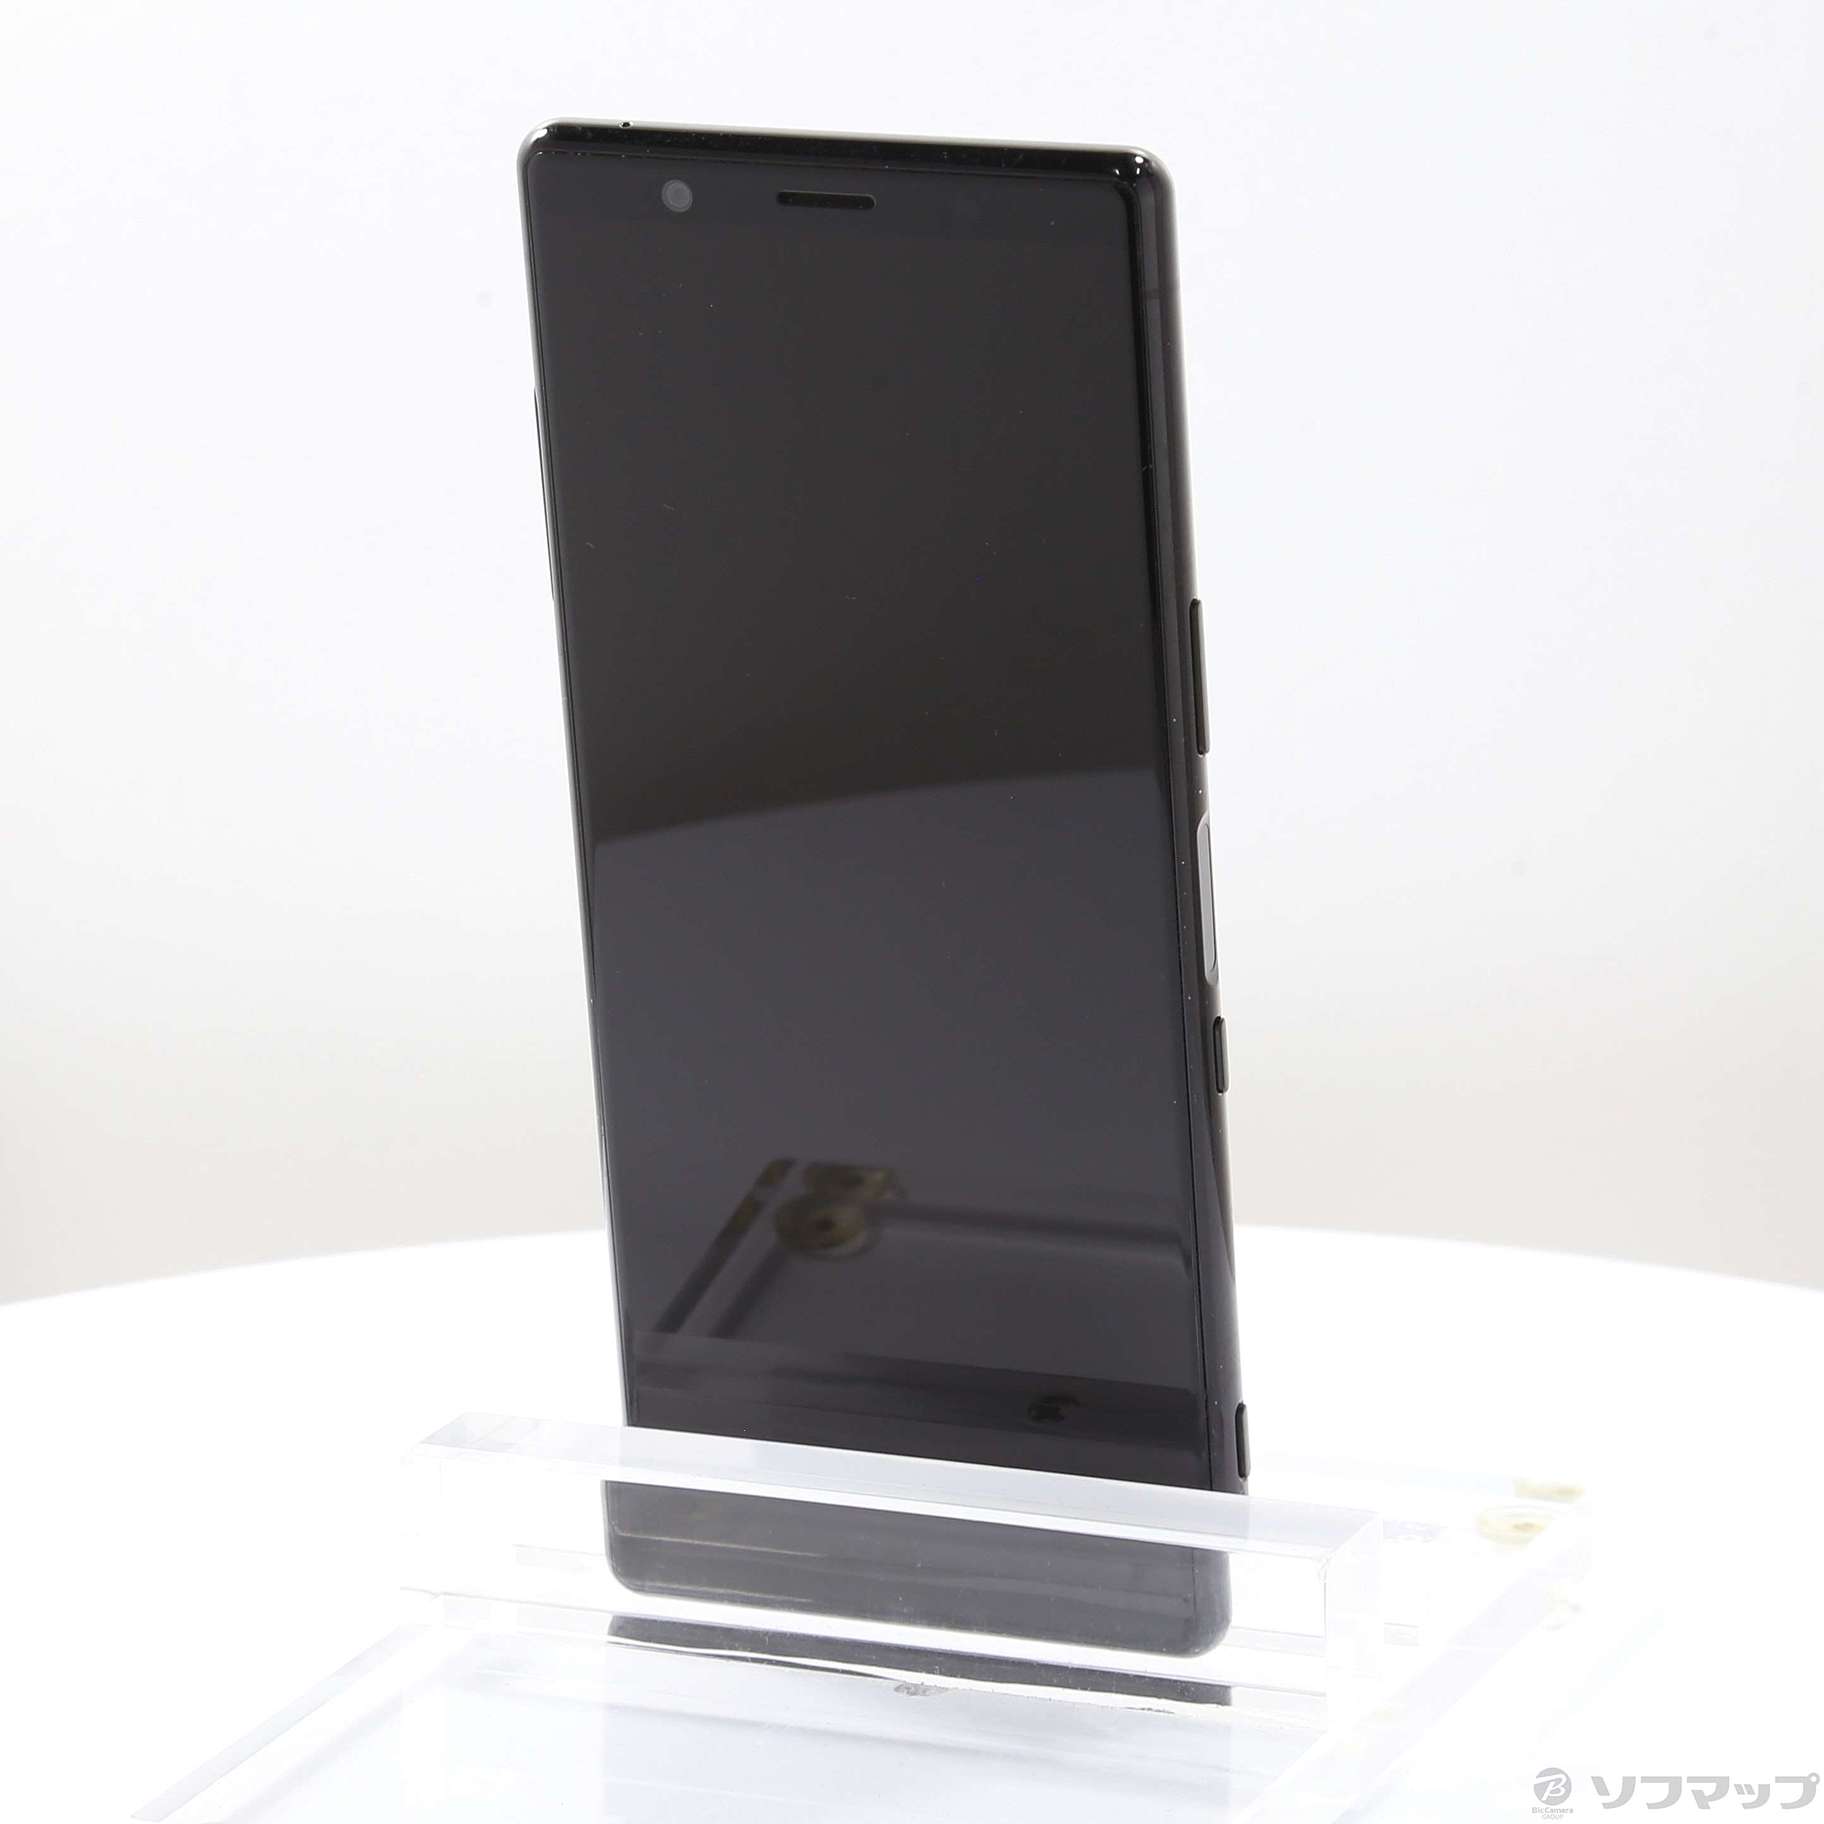 販売売品SONY Xperia5 J9260 スマートフォン 128GB simフリー レッド ソニー 中古 T6444526 Android